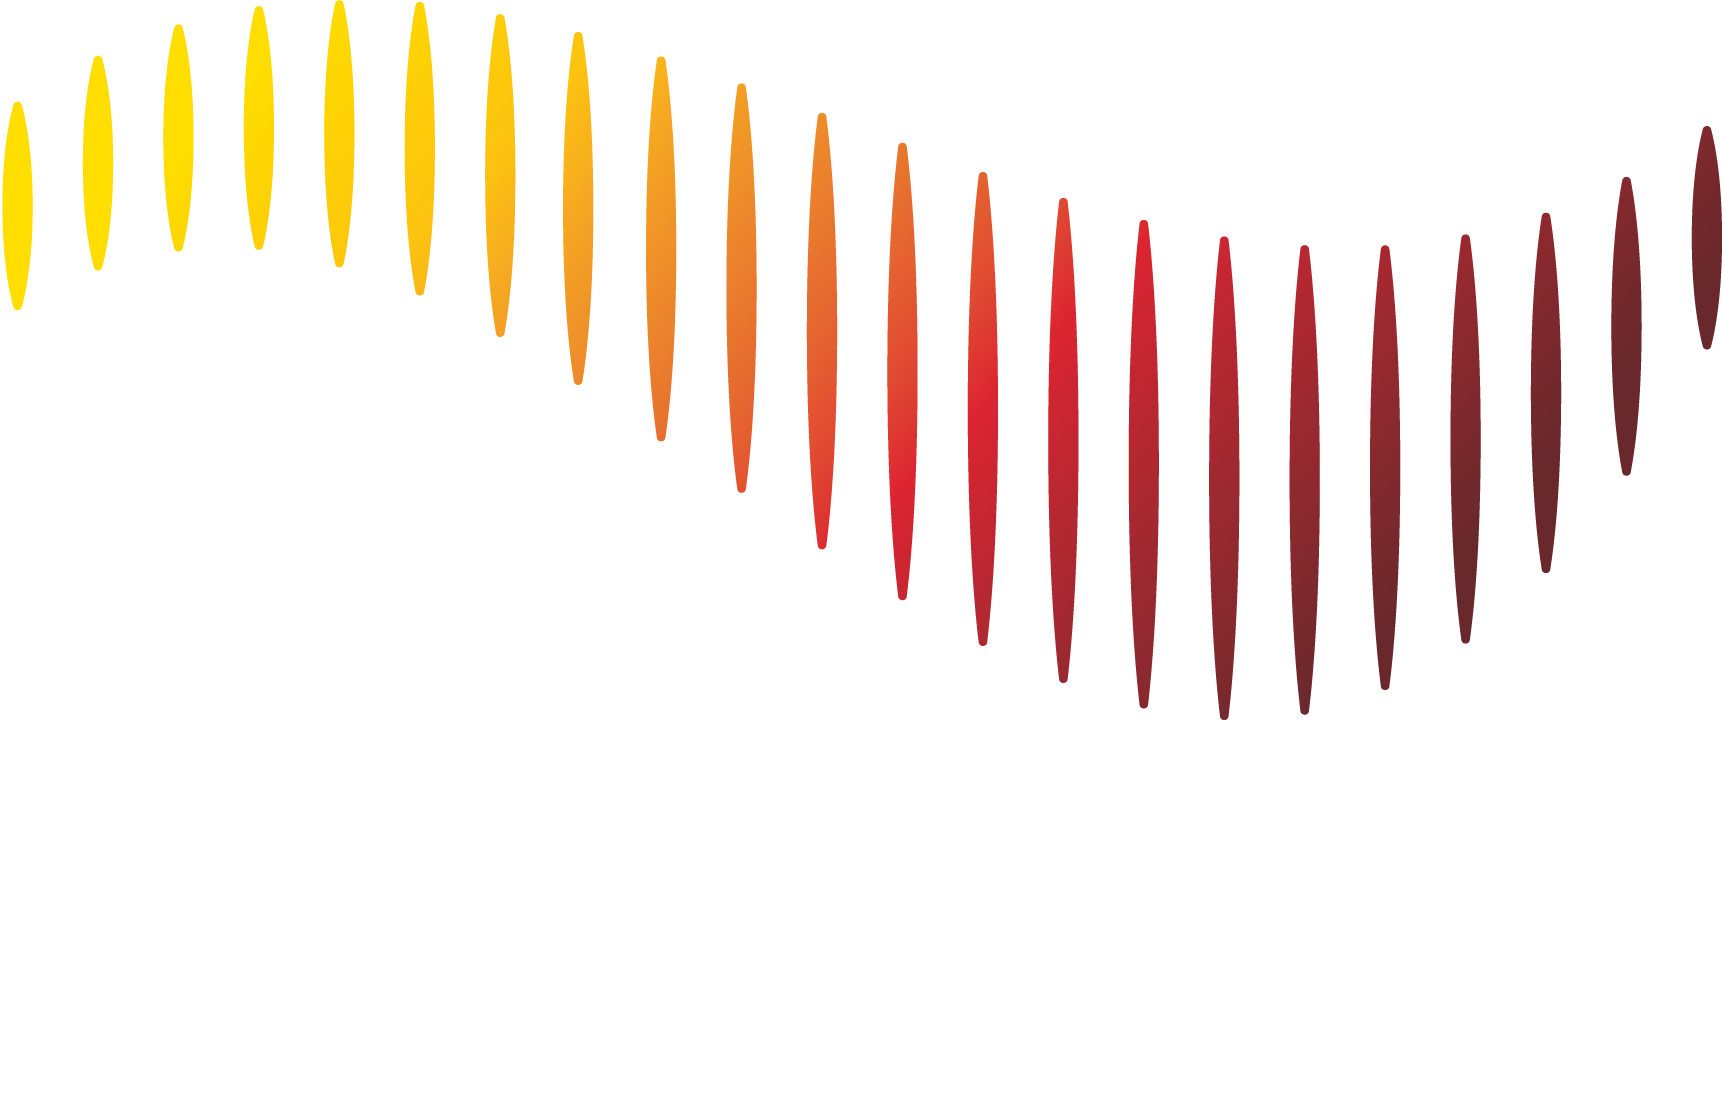 Vox Camerata Ltd